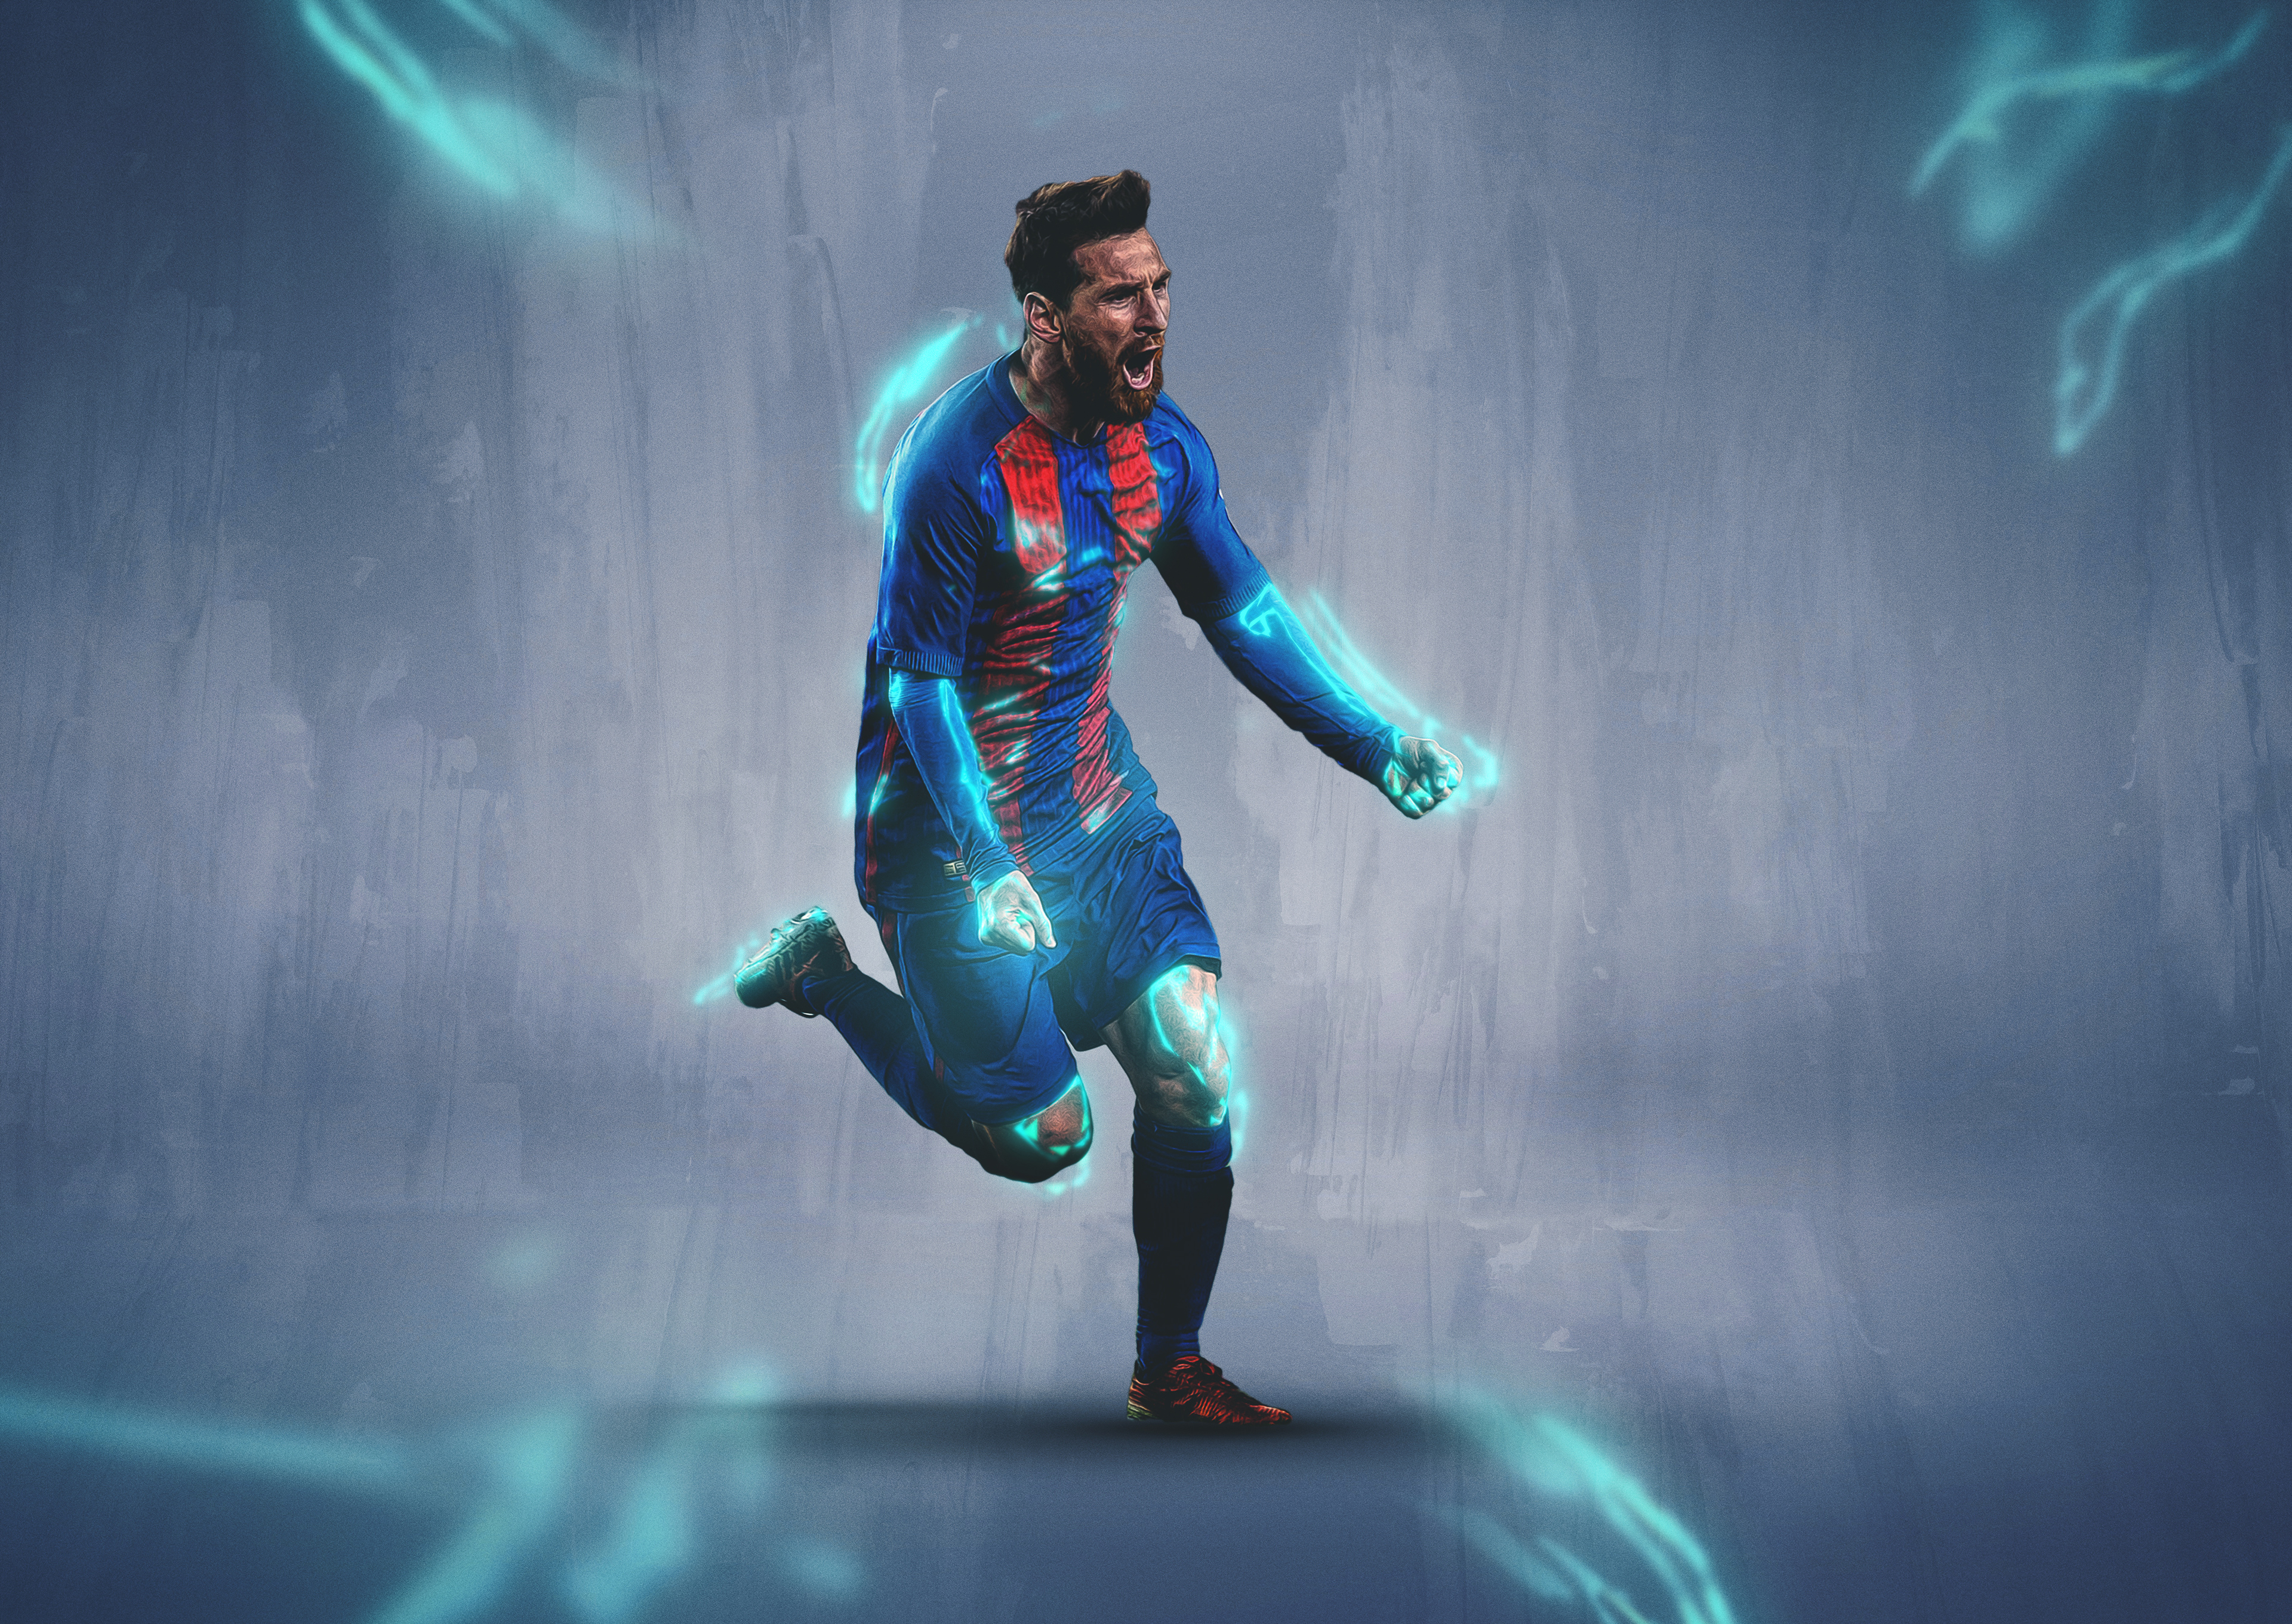 Lionel Messi Backgrounds: Tìm kiếm các hình nền đẹp có liên quan đến ngôi sao bóng đá ưa thích của bạn? Đừng bỏ lỡ bộ sưu tập hình nền Messi đa dạng và đầy sáng tạo này. Với hàng tá các tùy chọn để lựa chọn, bạn sẽ không bao giờ cảm thấy nhàm chán khi thay đổi hình nền trên thiết bị của mình.